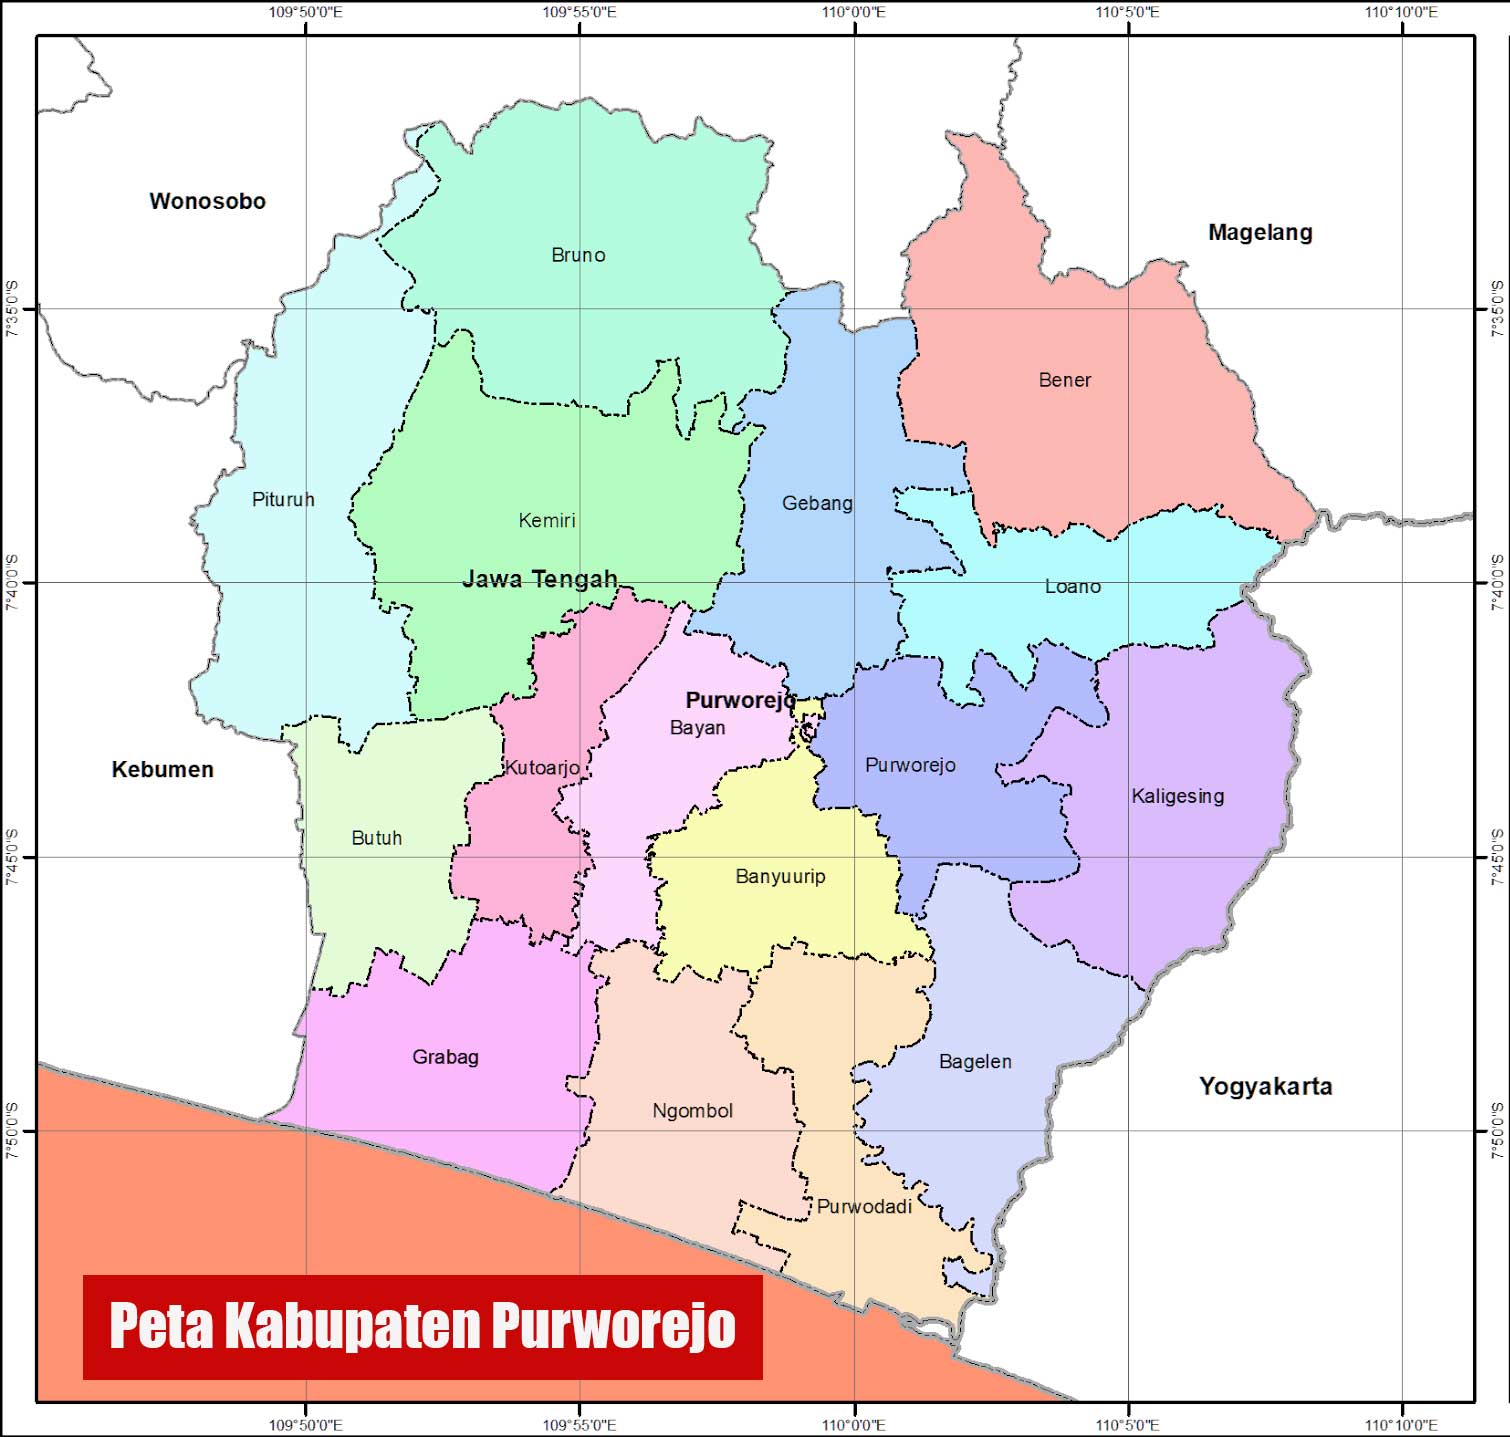 Peta Kabupaten Purworejo lengkap 16 kecamatan